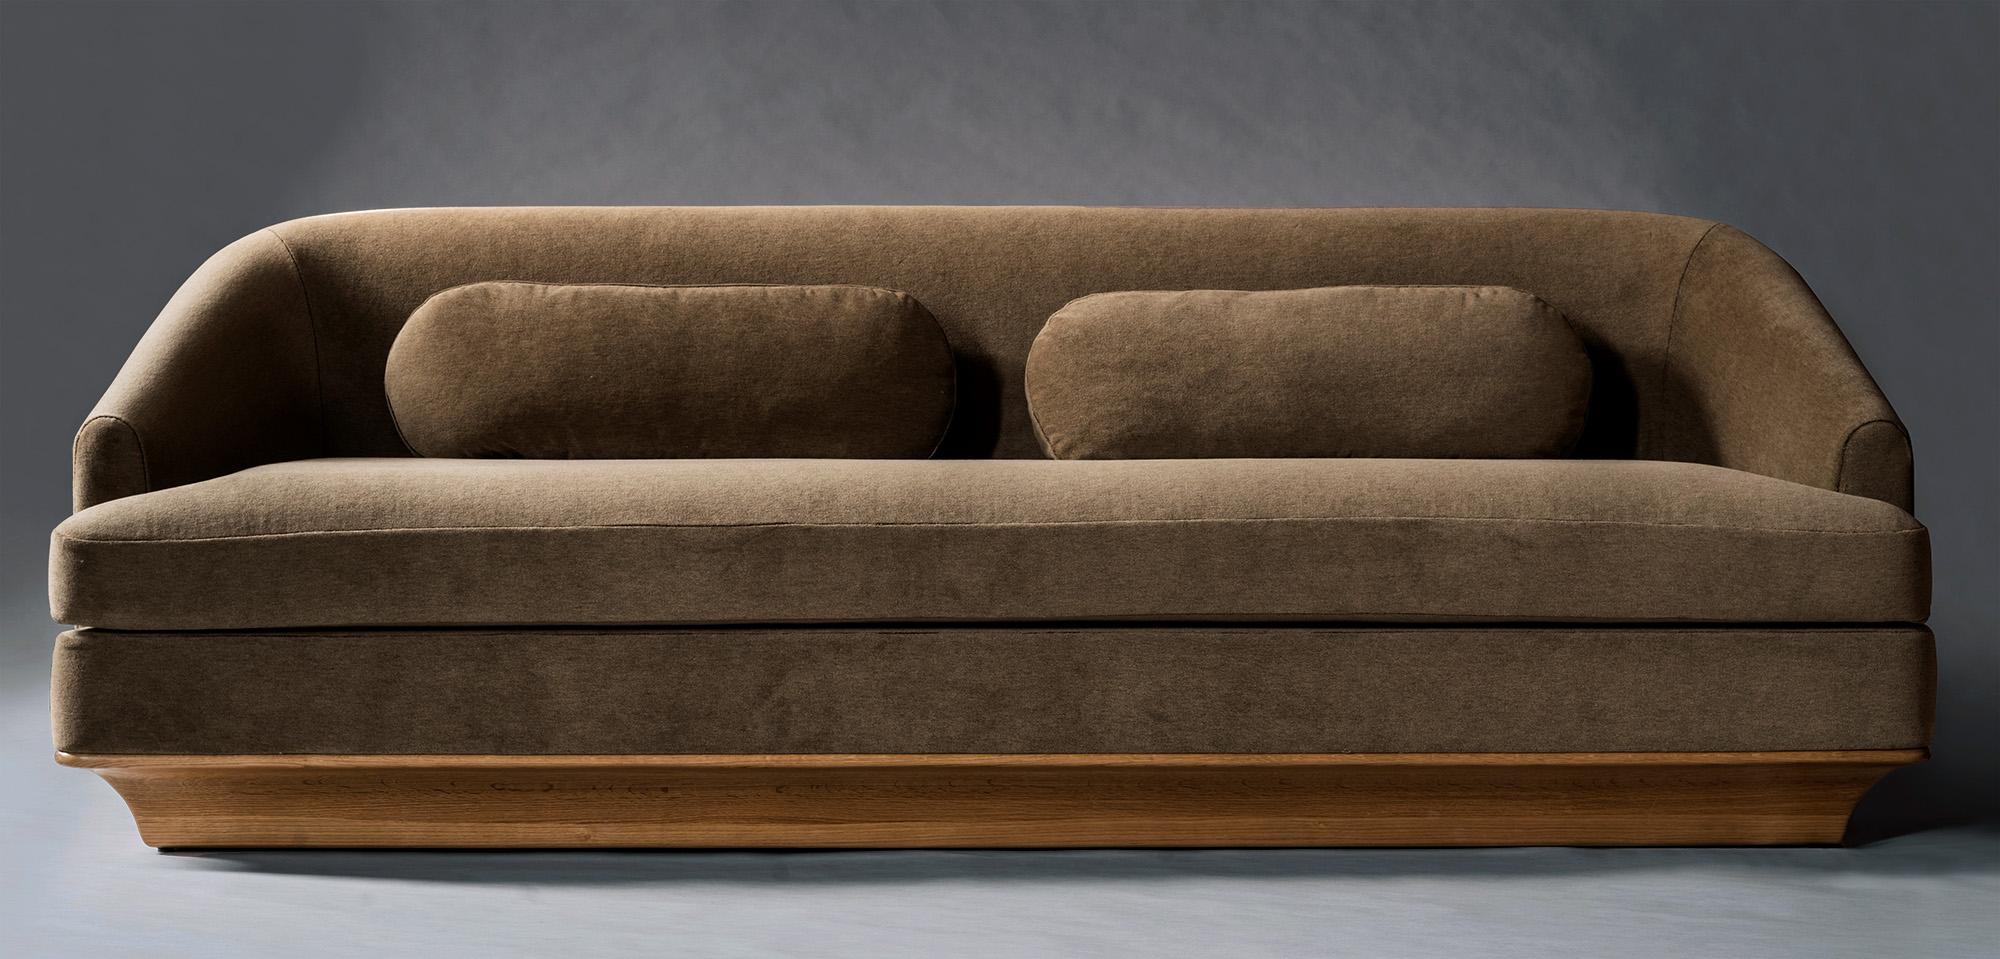 Das Nico-Sofa verbindet schöne Proportionen mit zeitlosen MATERIALEN und einem hohen Maß an Komfort. Gerade Linien werden durch geschwungene Kanten und schräge Arme abgemildert, so dass ein durchdachtes Gleichgewicht zwischen harten und weichen